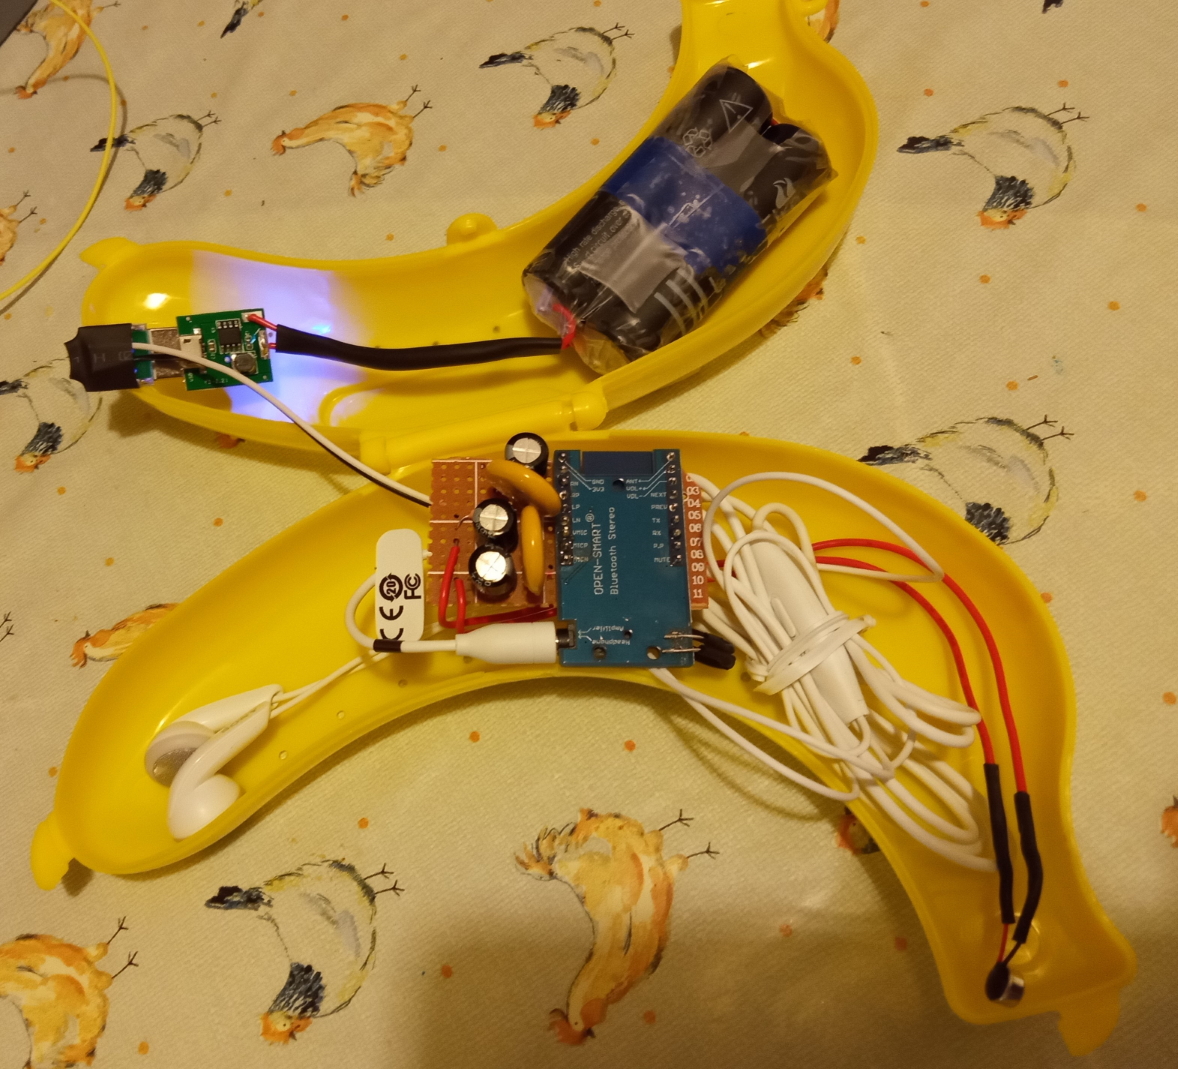 Banana phone internals